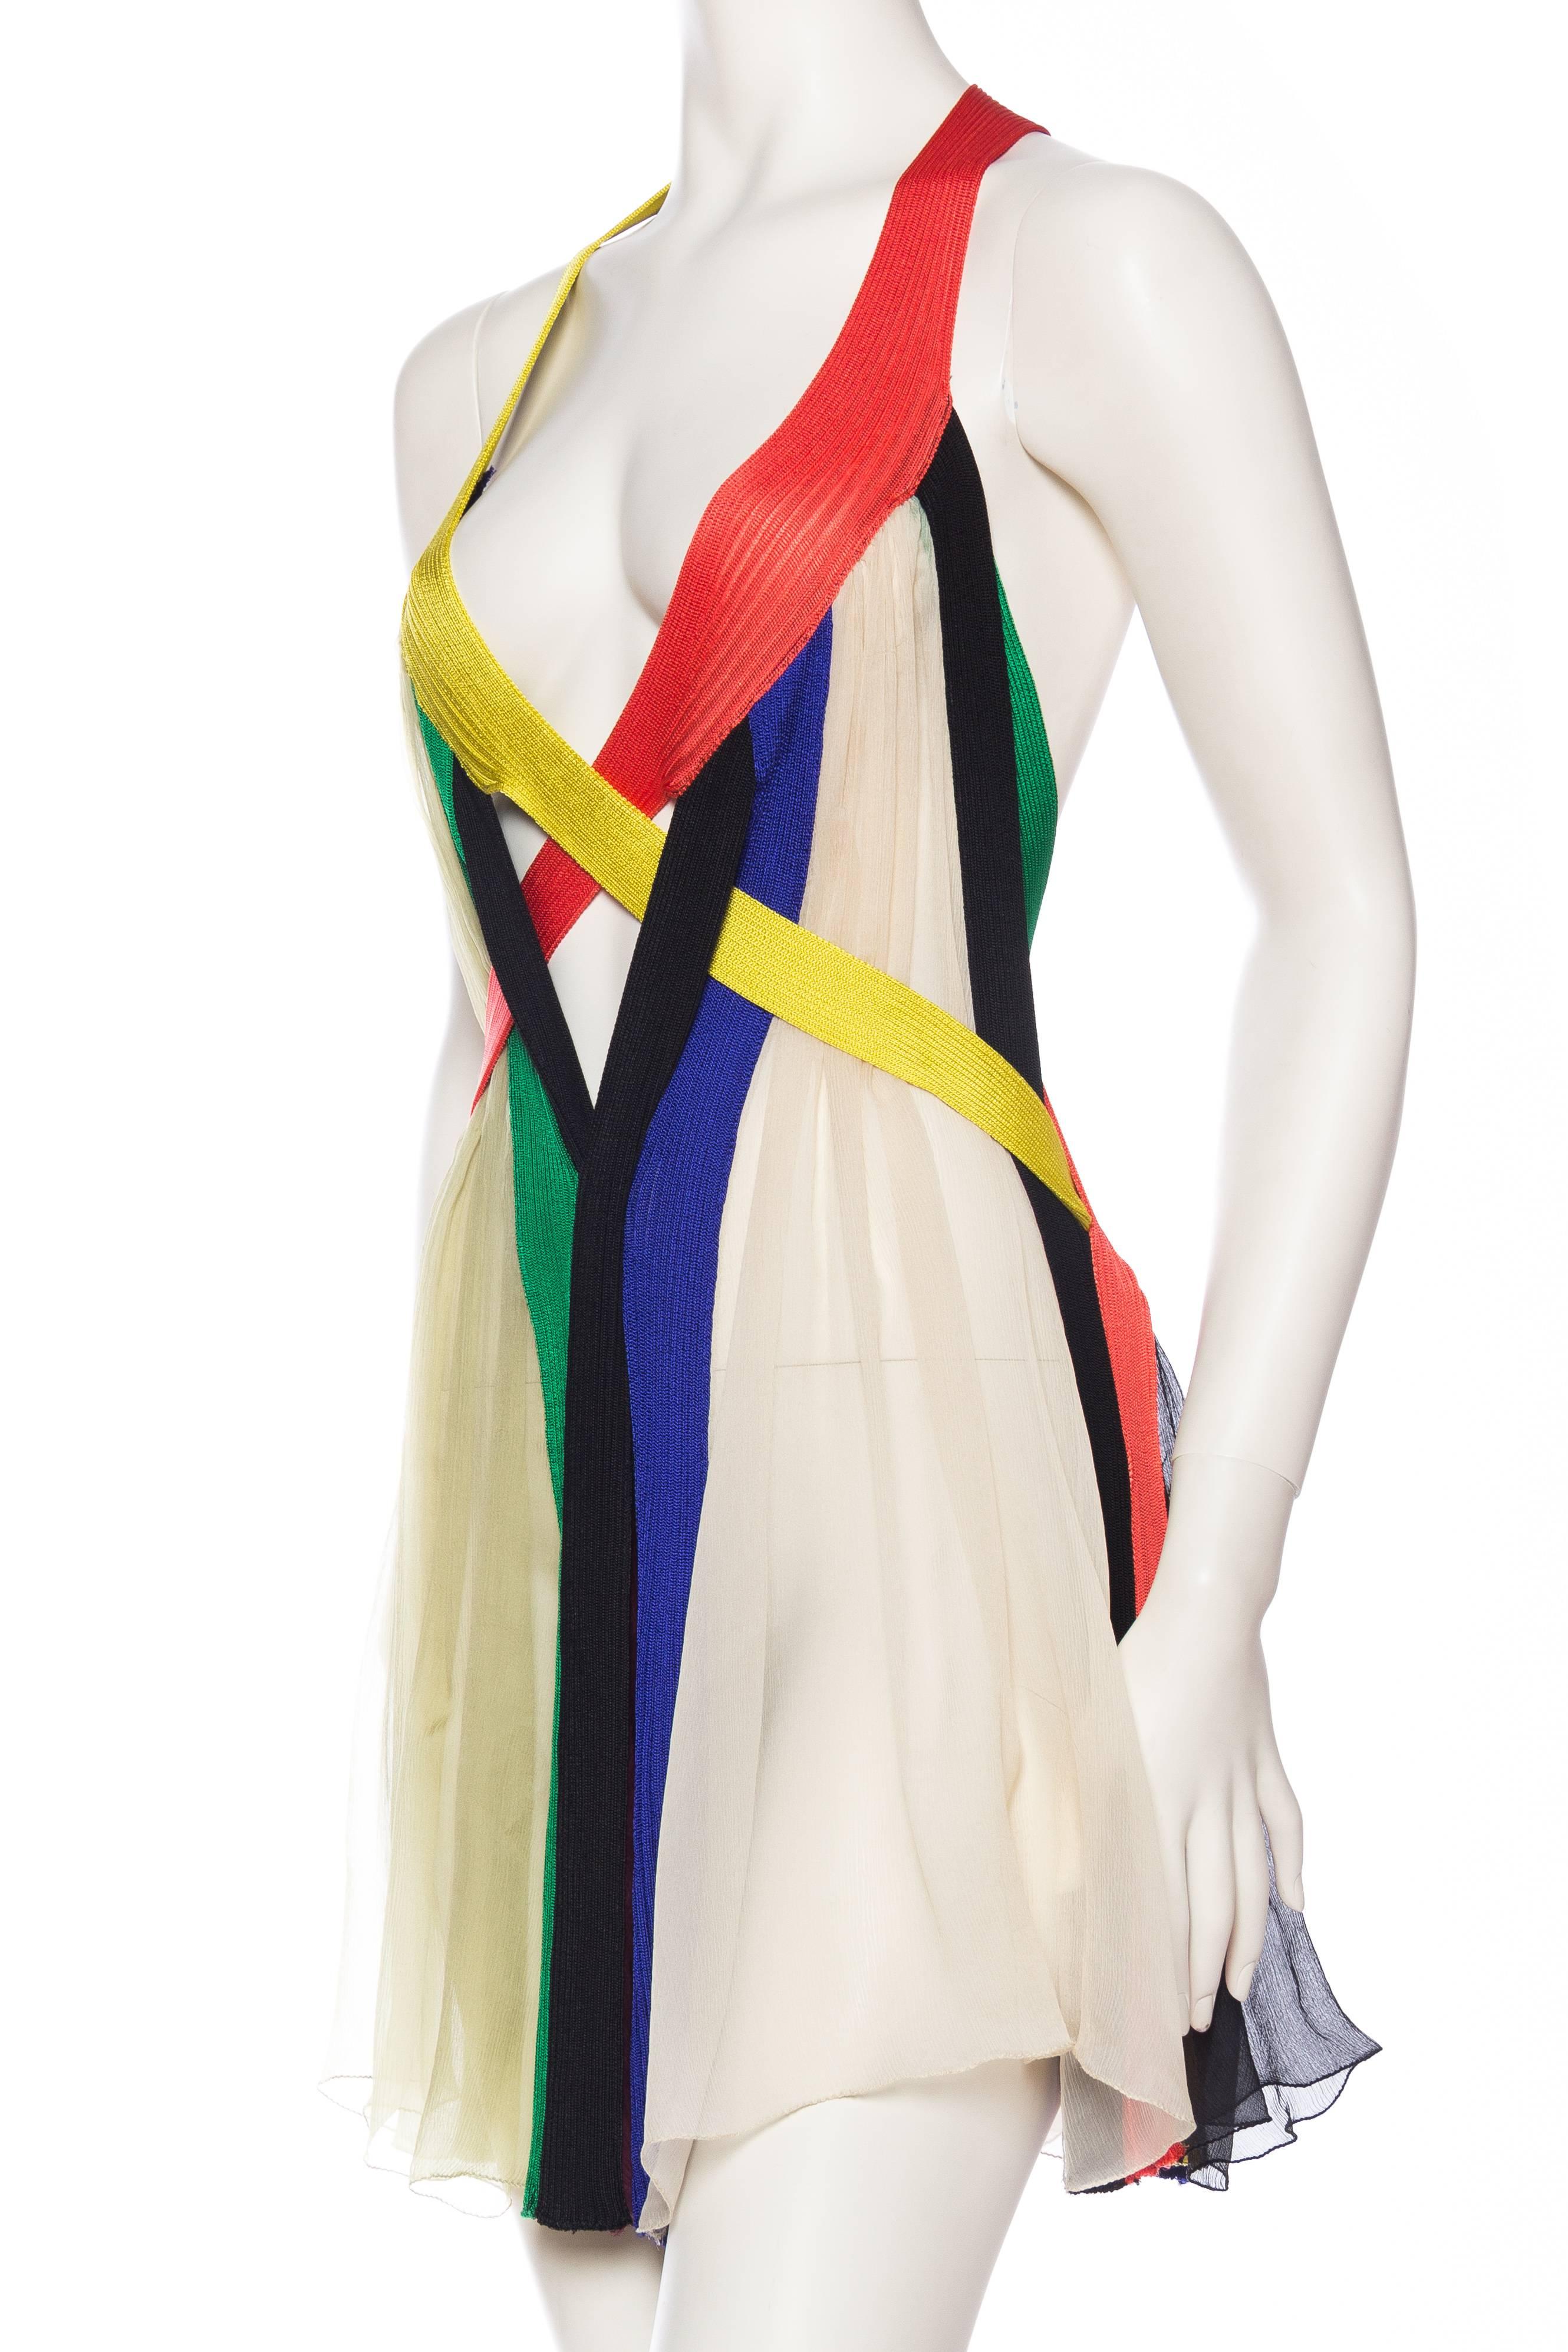 Jean Paul Gaultier Sheer Rainbow Strap Dress 1